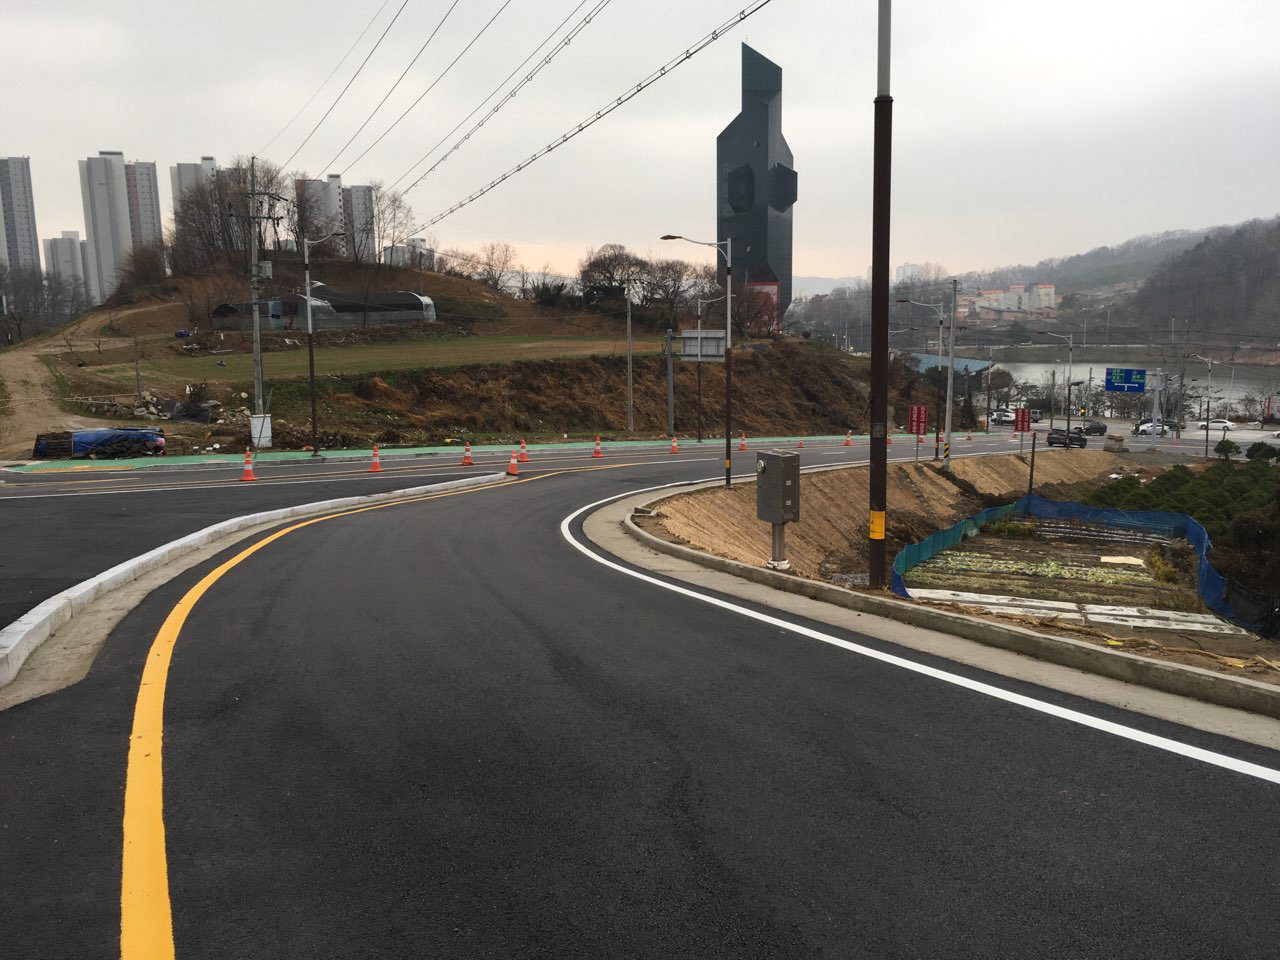 청주시는 산성도로 교통개선을 위해 지난 2017년 3월 실시설계를 완료하고, 보상협의 거쳐 2017년 12월 공사 착공해 2018년 12월 21일까지 공사를 완료할 계획이다. / 청주시